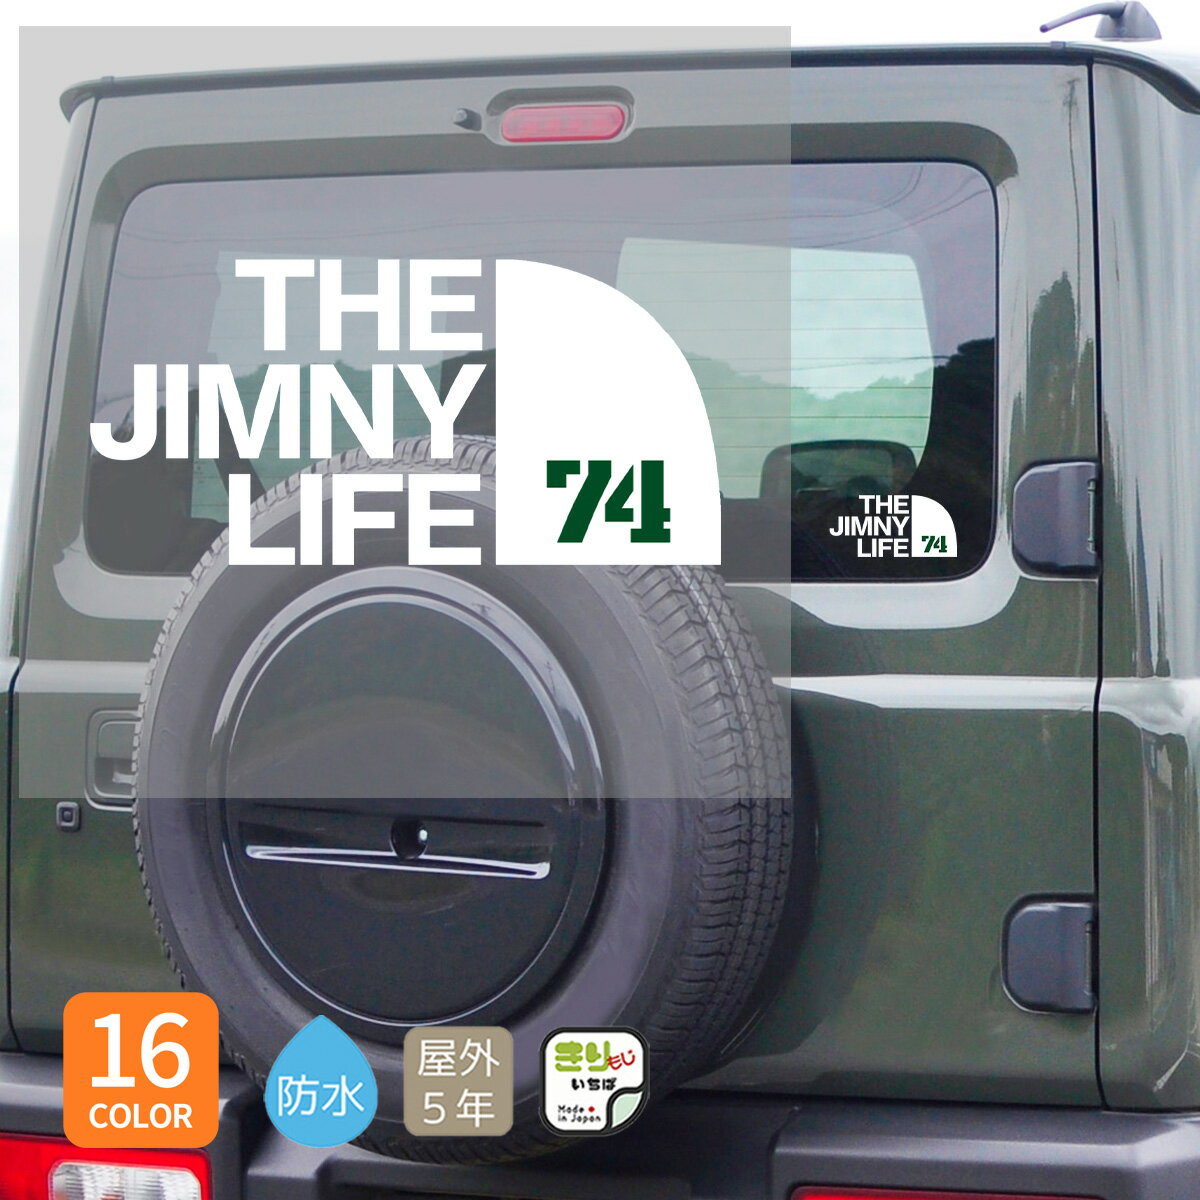 ジムニー ステッカー シエラ SIERRA おしゃれ かっこいい THE JIMNY LIFE 74 カッティングステッカー シール 車 防水 じむにー jimny jb74 カスタム パーツ アウトドア OUTDOOR カーステッカー カー用品 キャンプ きりもじいちば